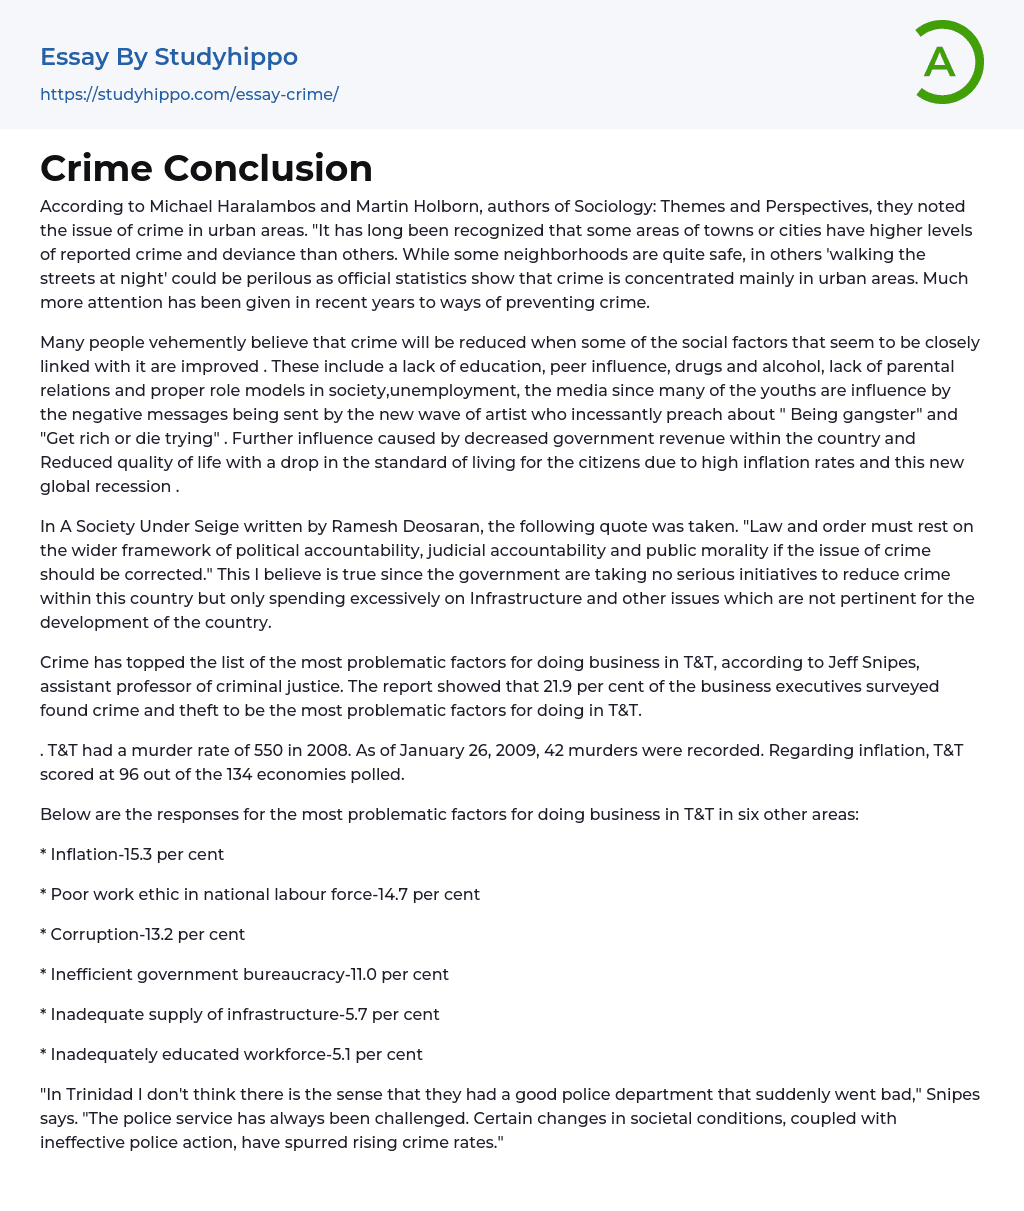 juvenile crime conclusion essay